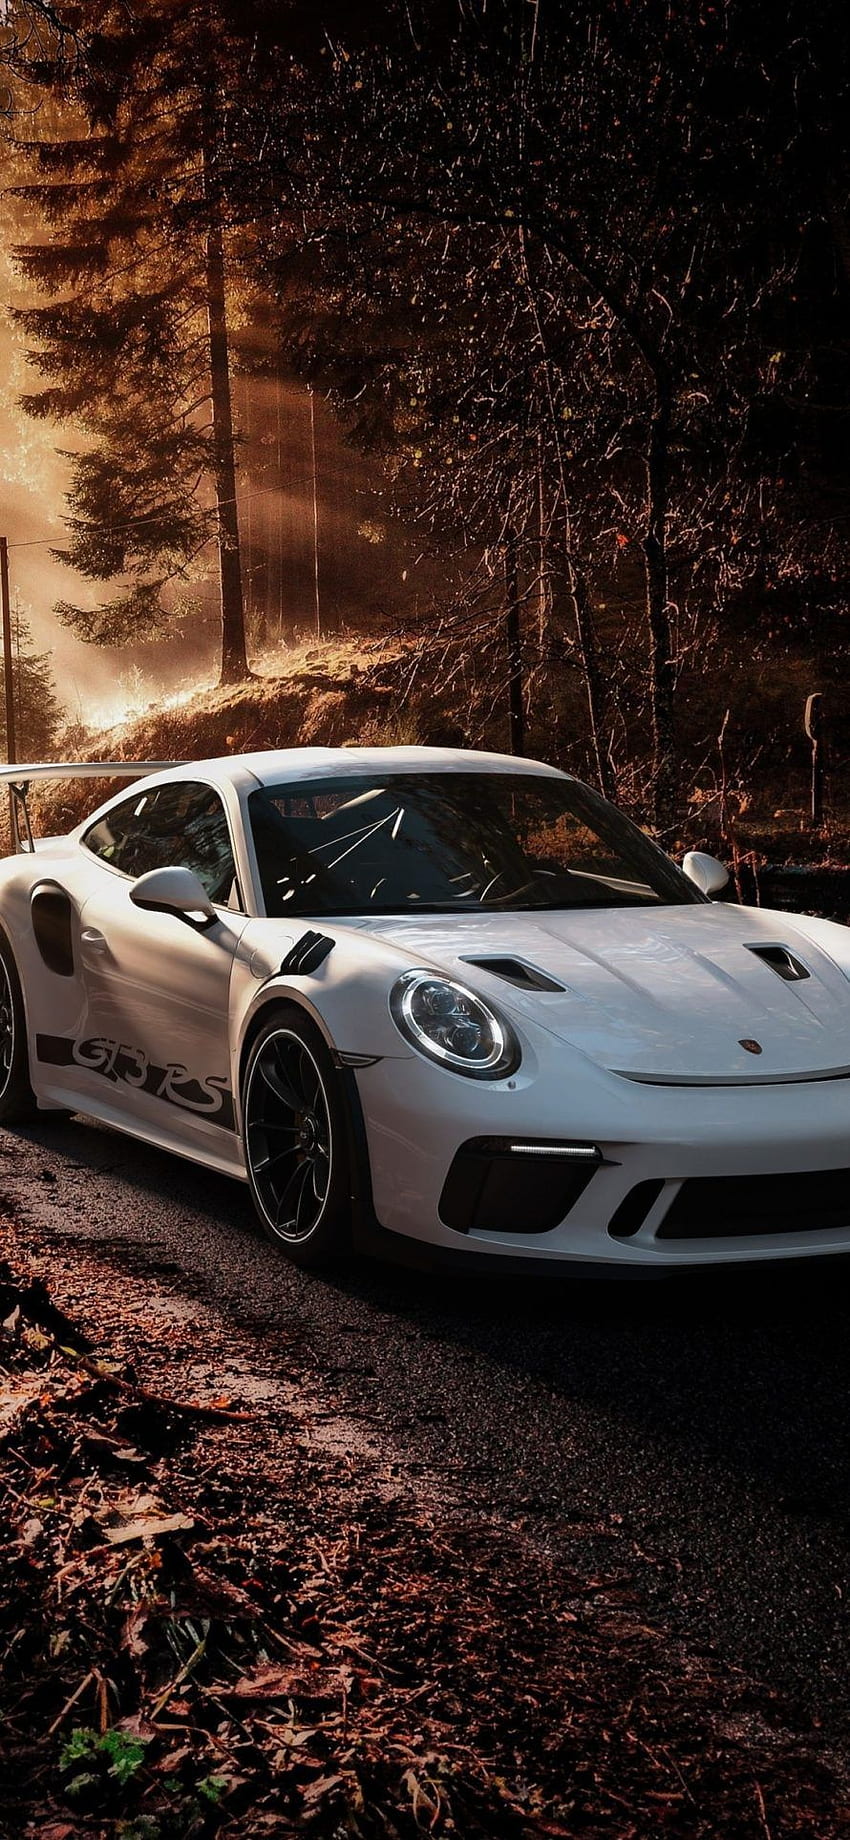 Porsche 911 iPhone - Porsche 911 Gt3 Rs iPhone - wallpaper ponsel HD